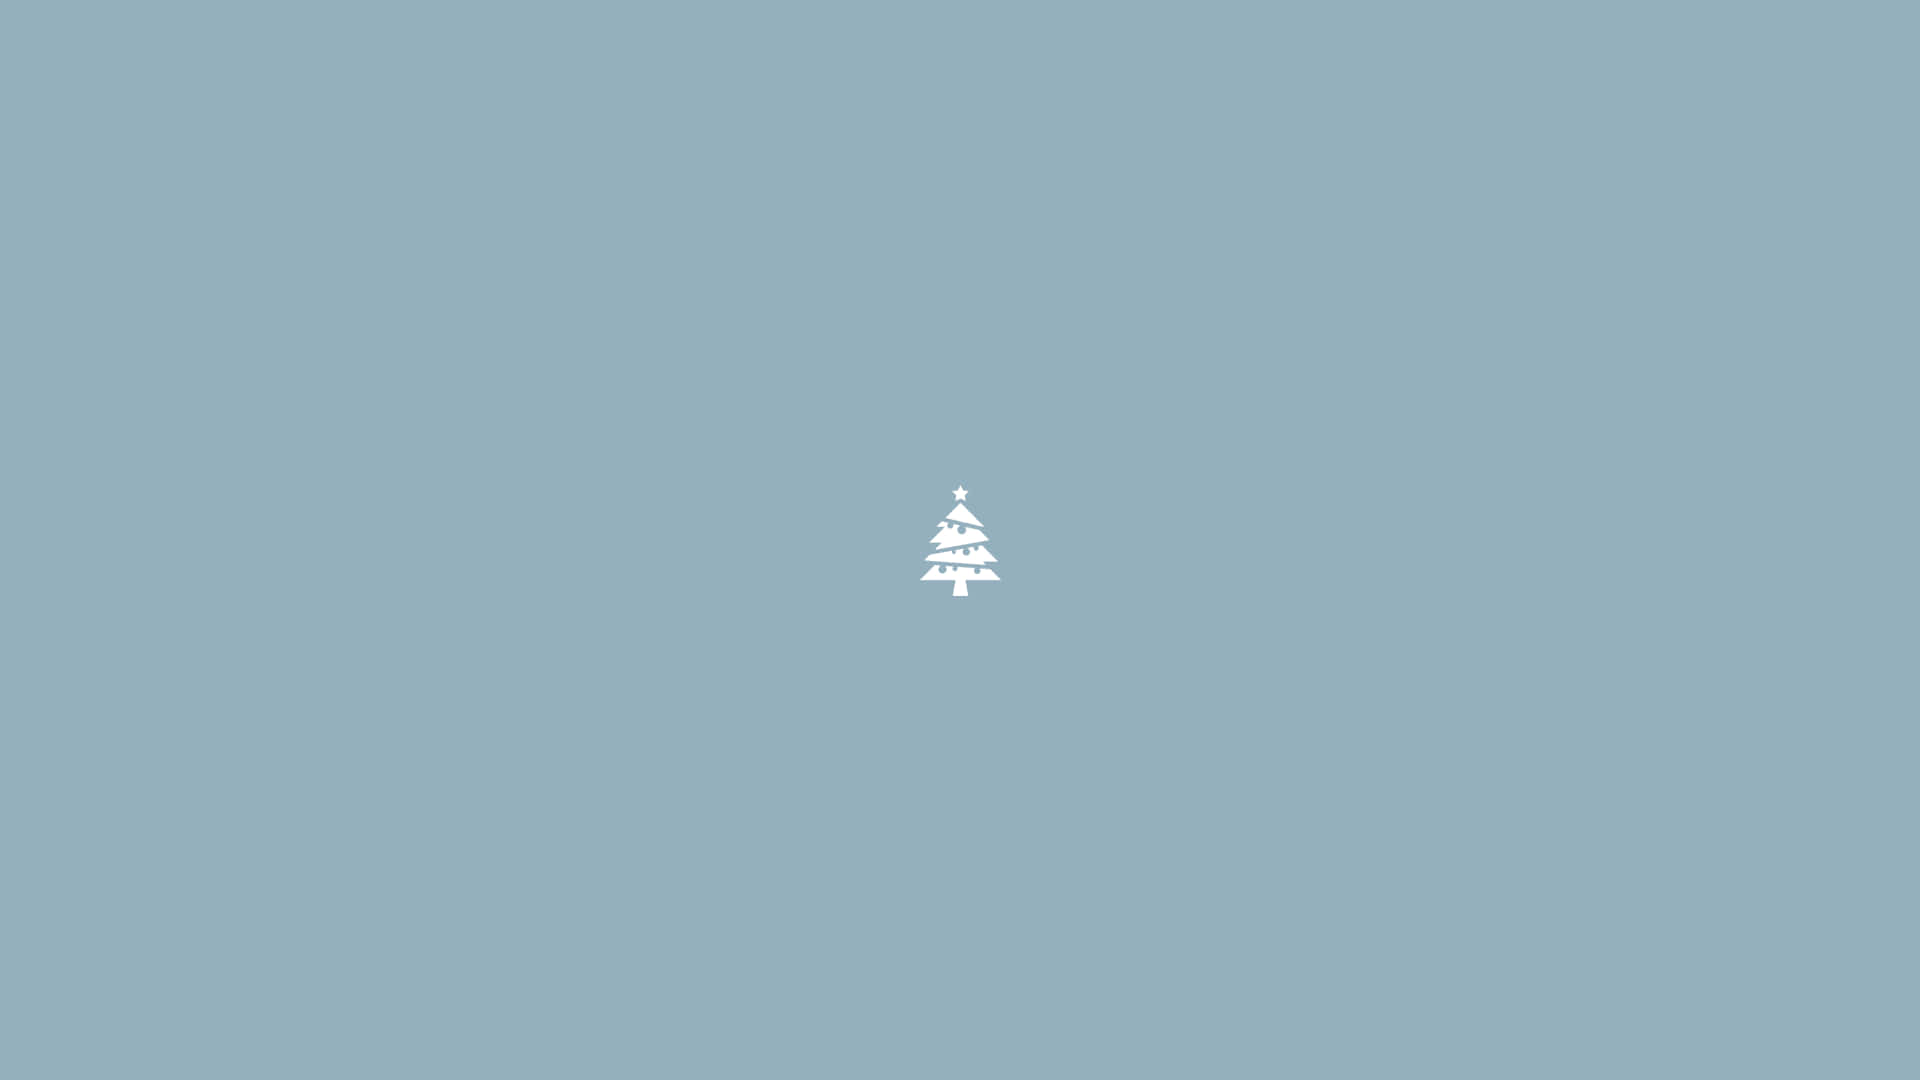 Einkleiner Weihnachtsbaum Auf Einem Blauen Hintergrund. Wallpaper